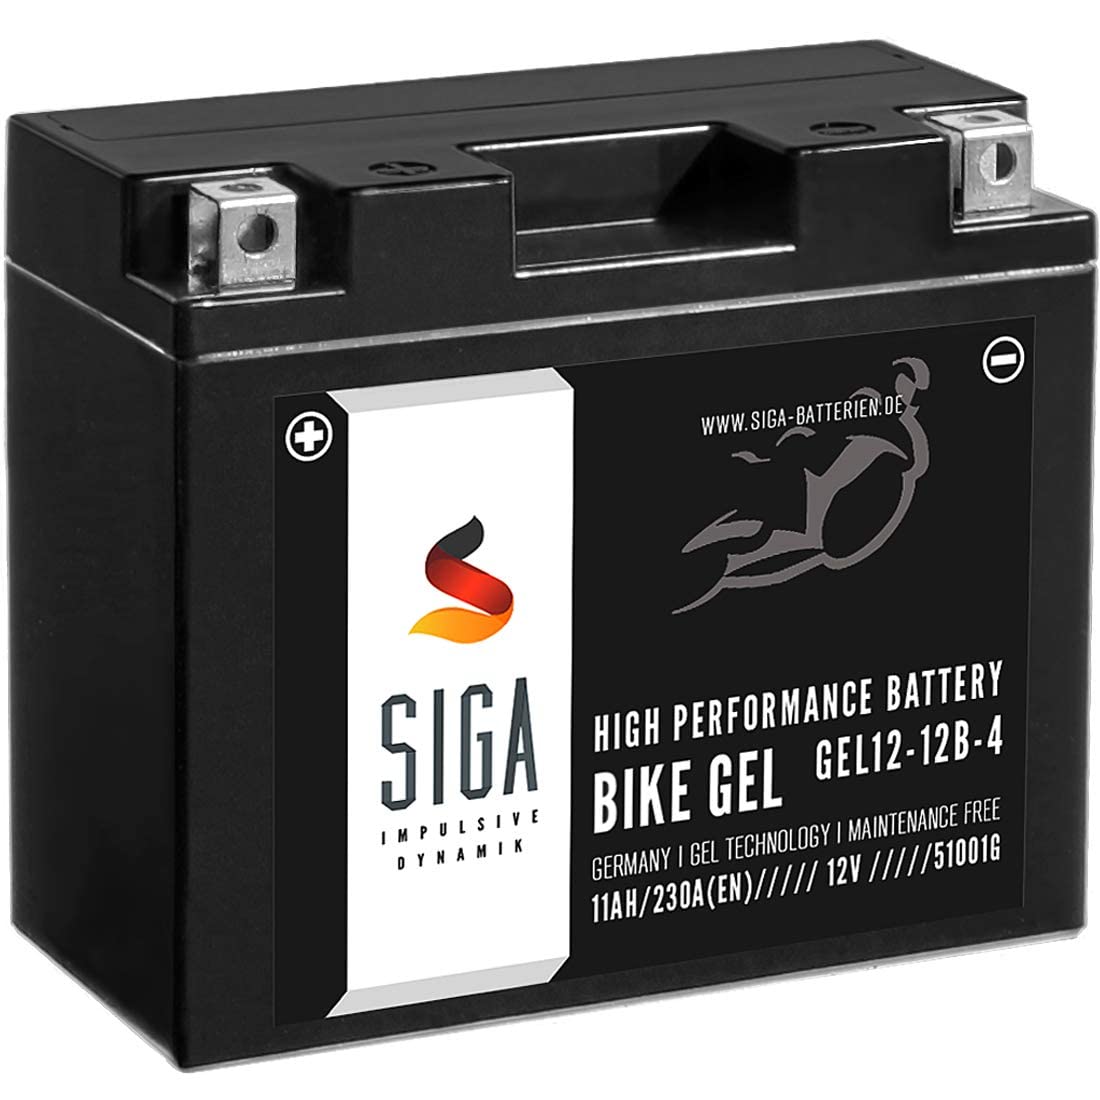 SIGA GEL Motorradbatterie 12V 11Ah 230A/EN GEL Batterie YT12-B4 GEL12-12B-4 YT12B-BS GT12-B4 FT12B-4 51001